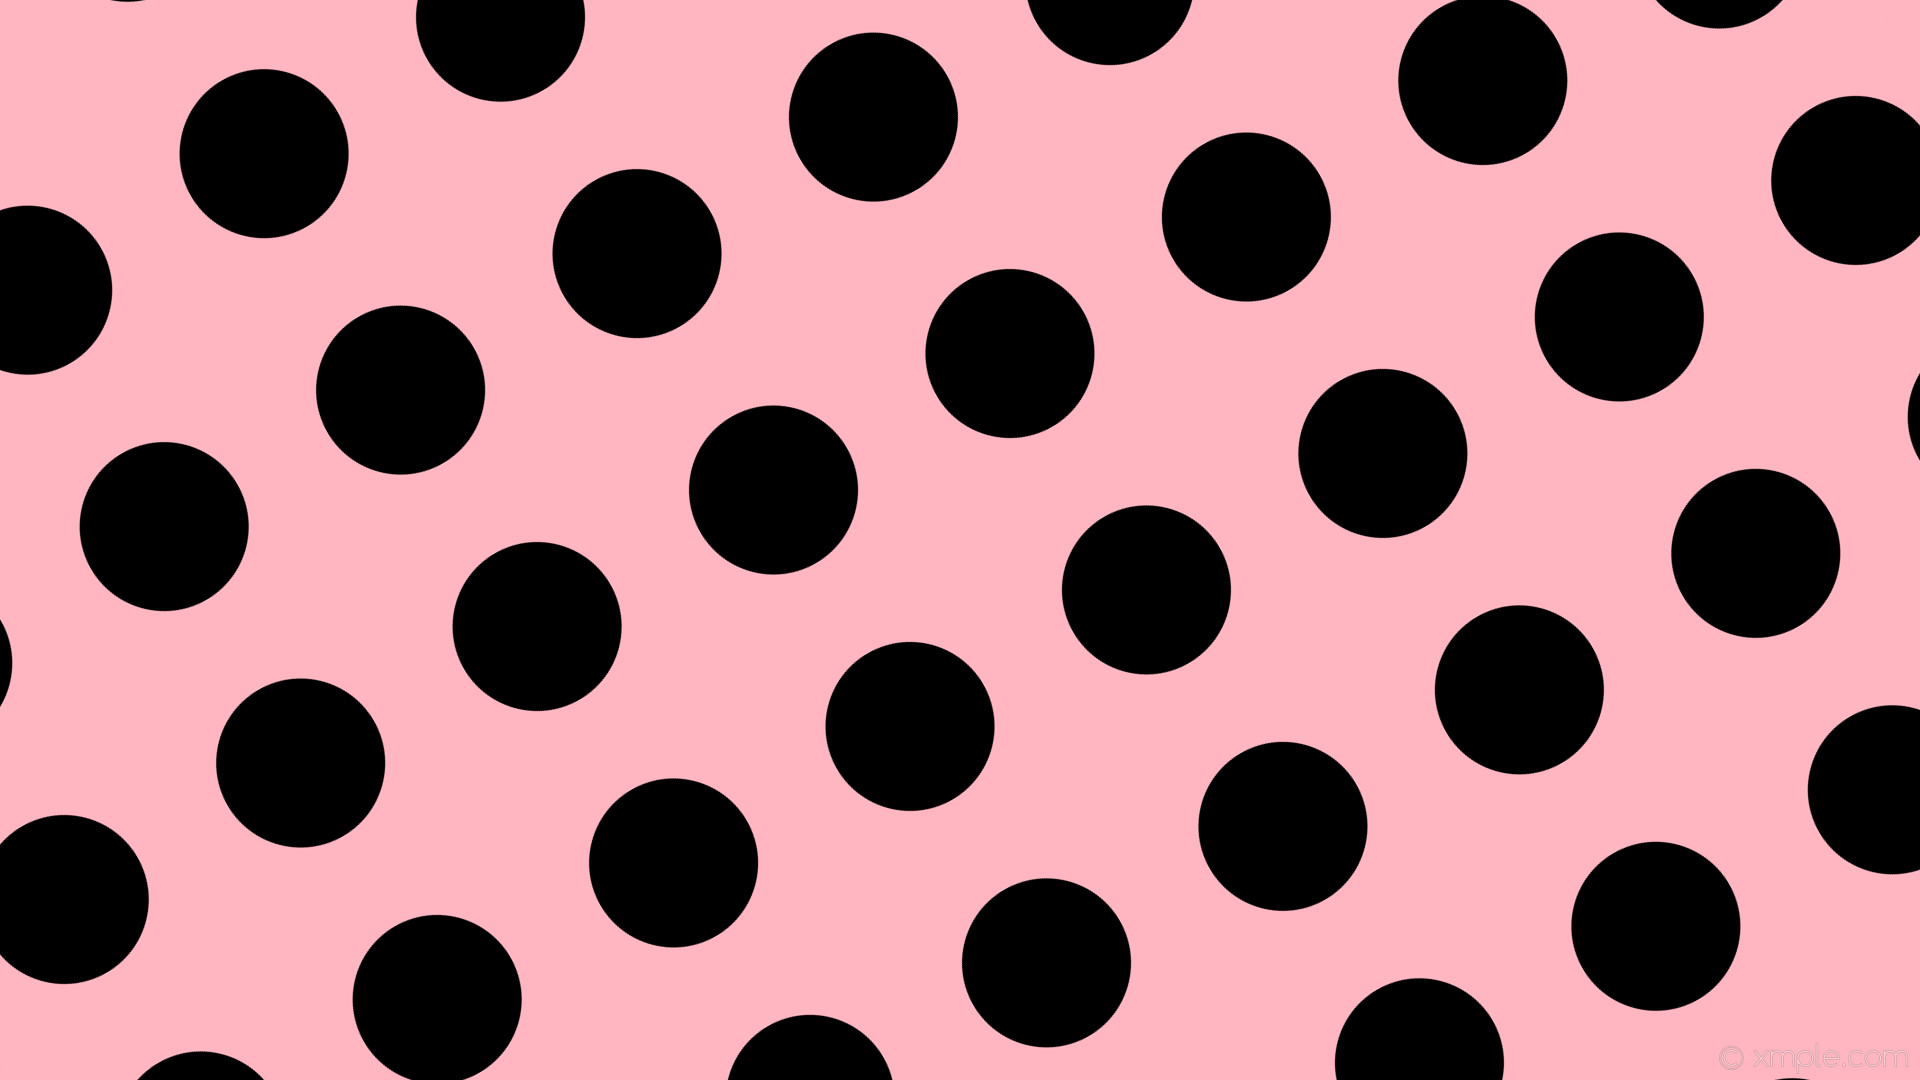 1920x1080 wallpaper pink polka dots black spots light pink #ffb6c1 #000000 30Â° 169px  273px